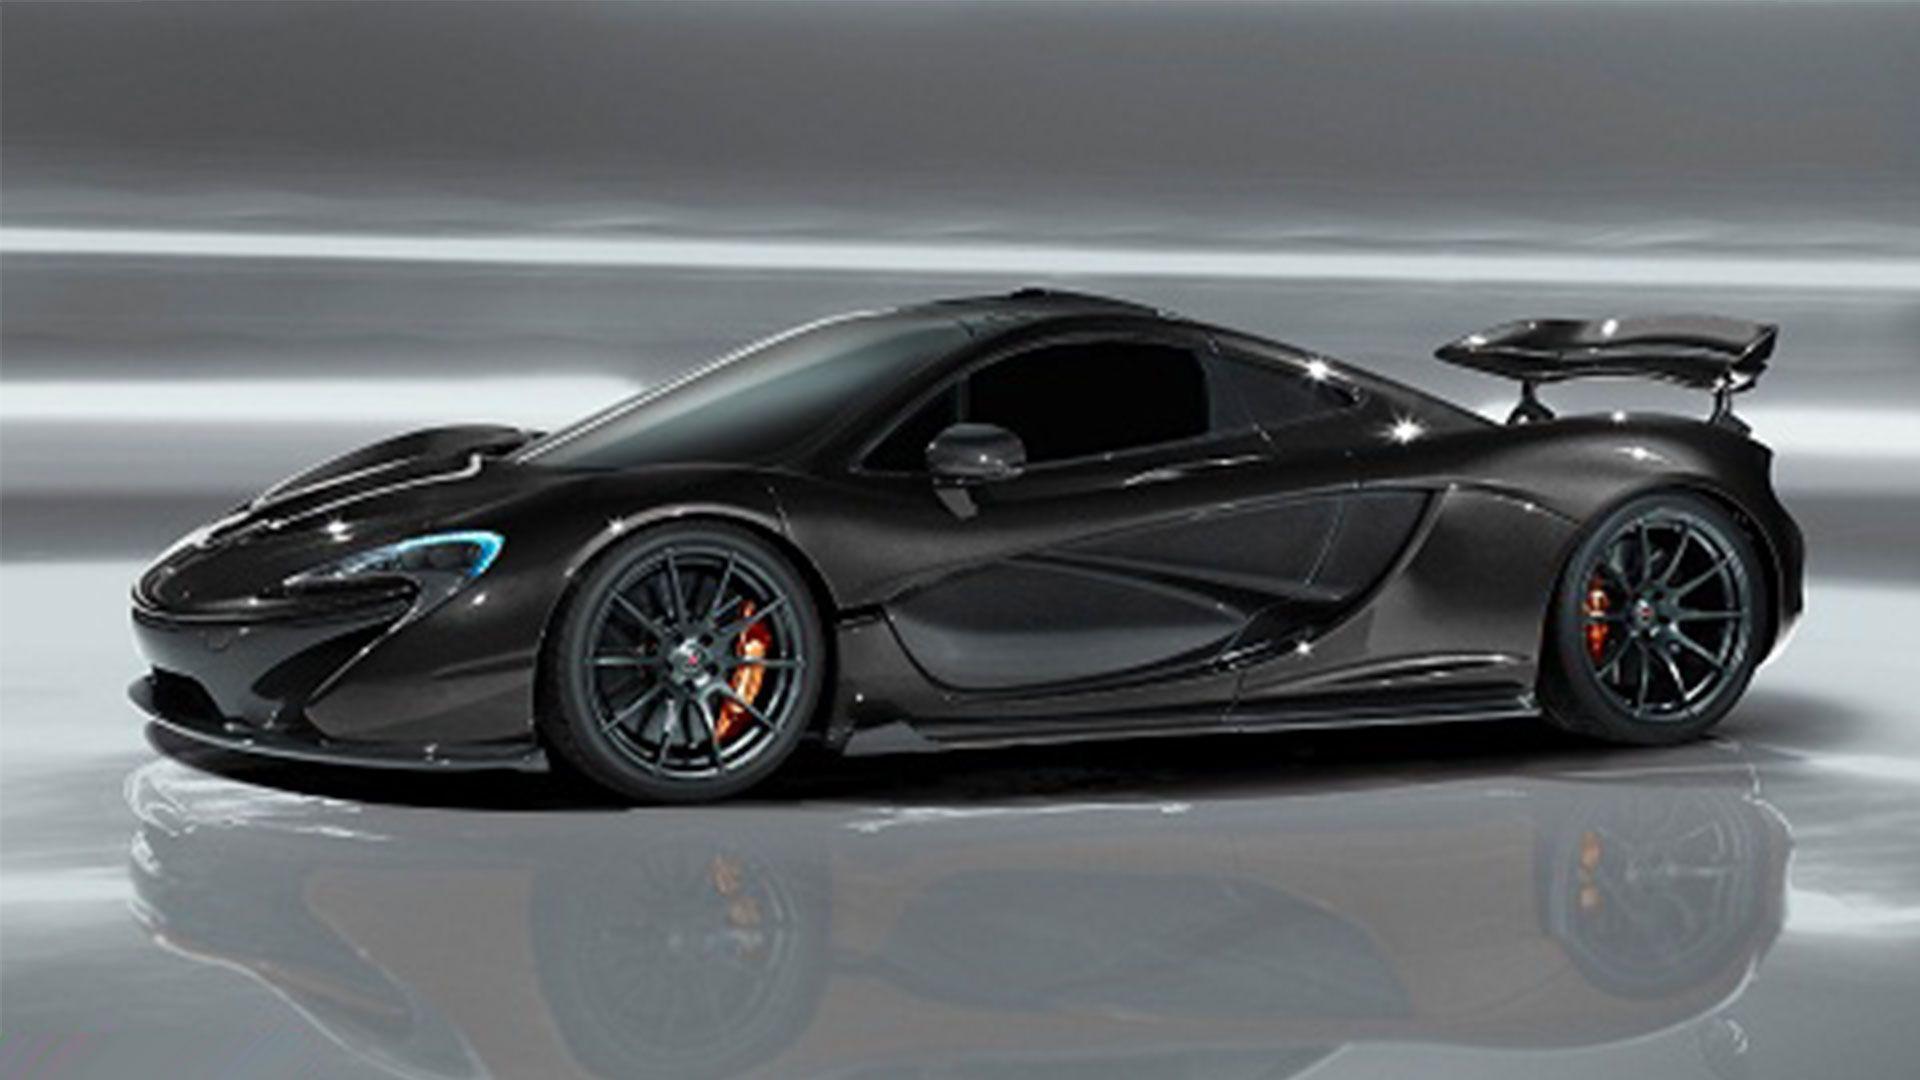 Best image about McLaren. Cars, Car image